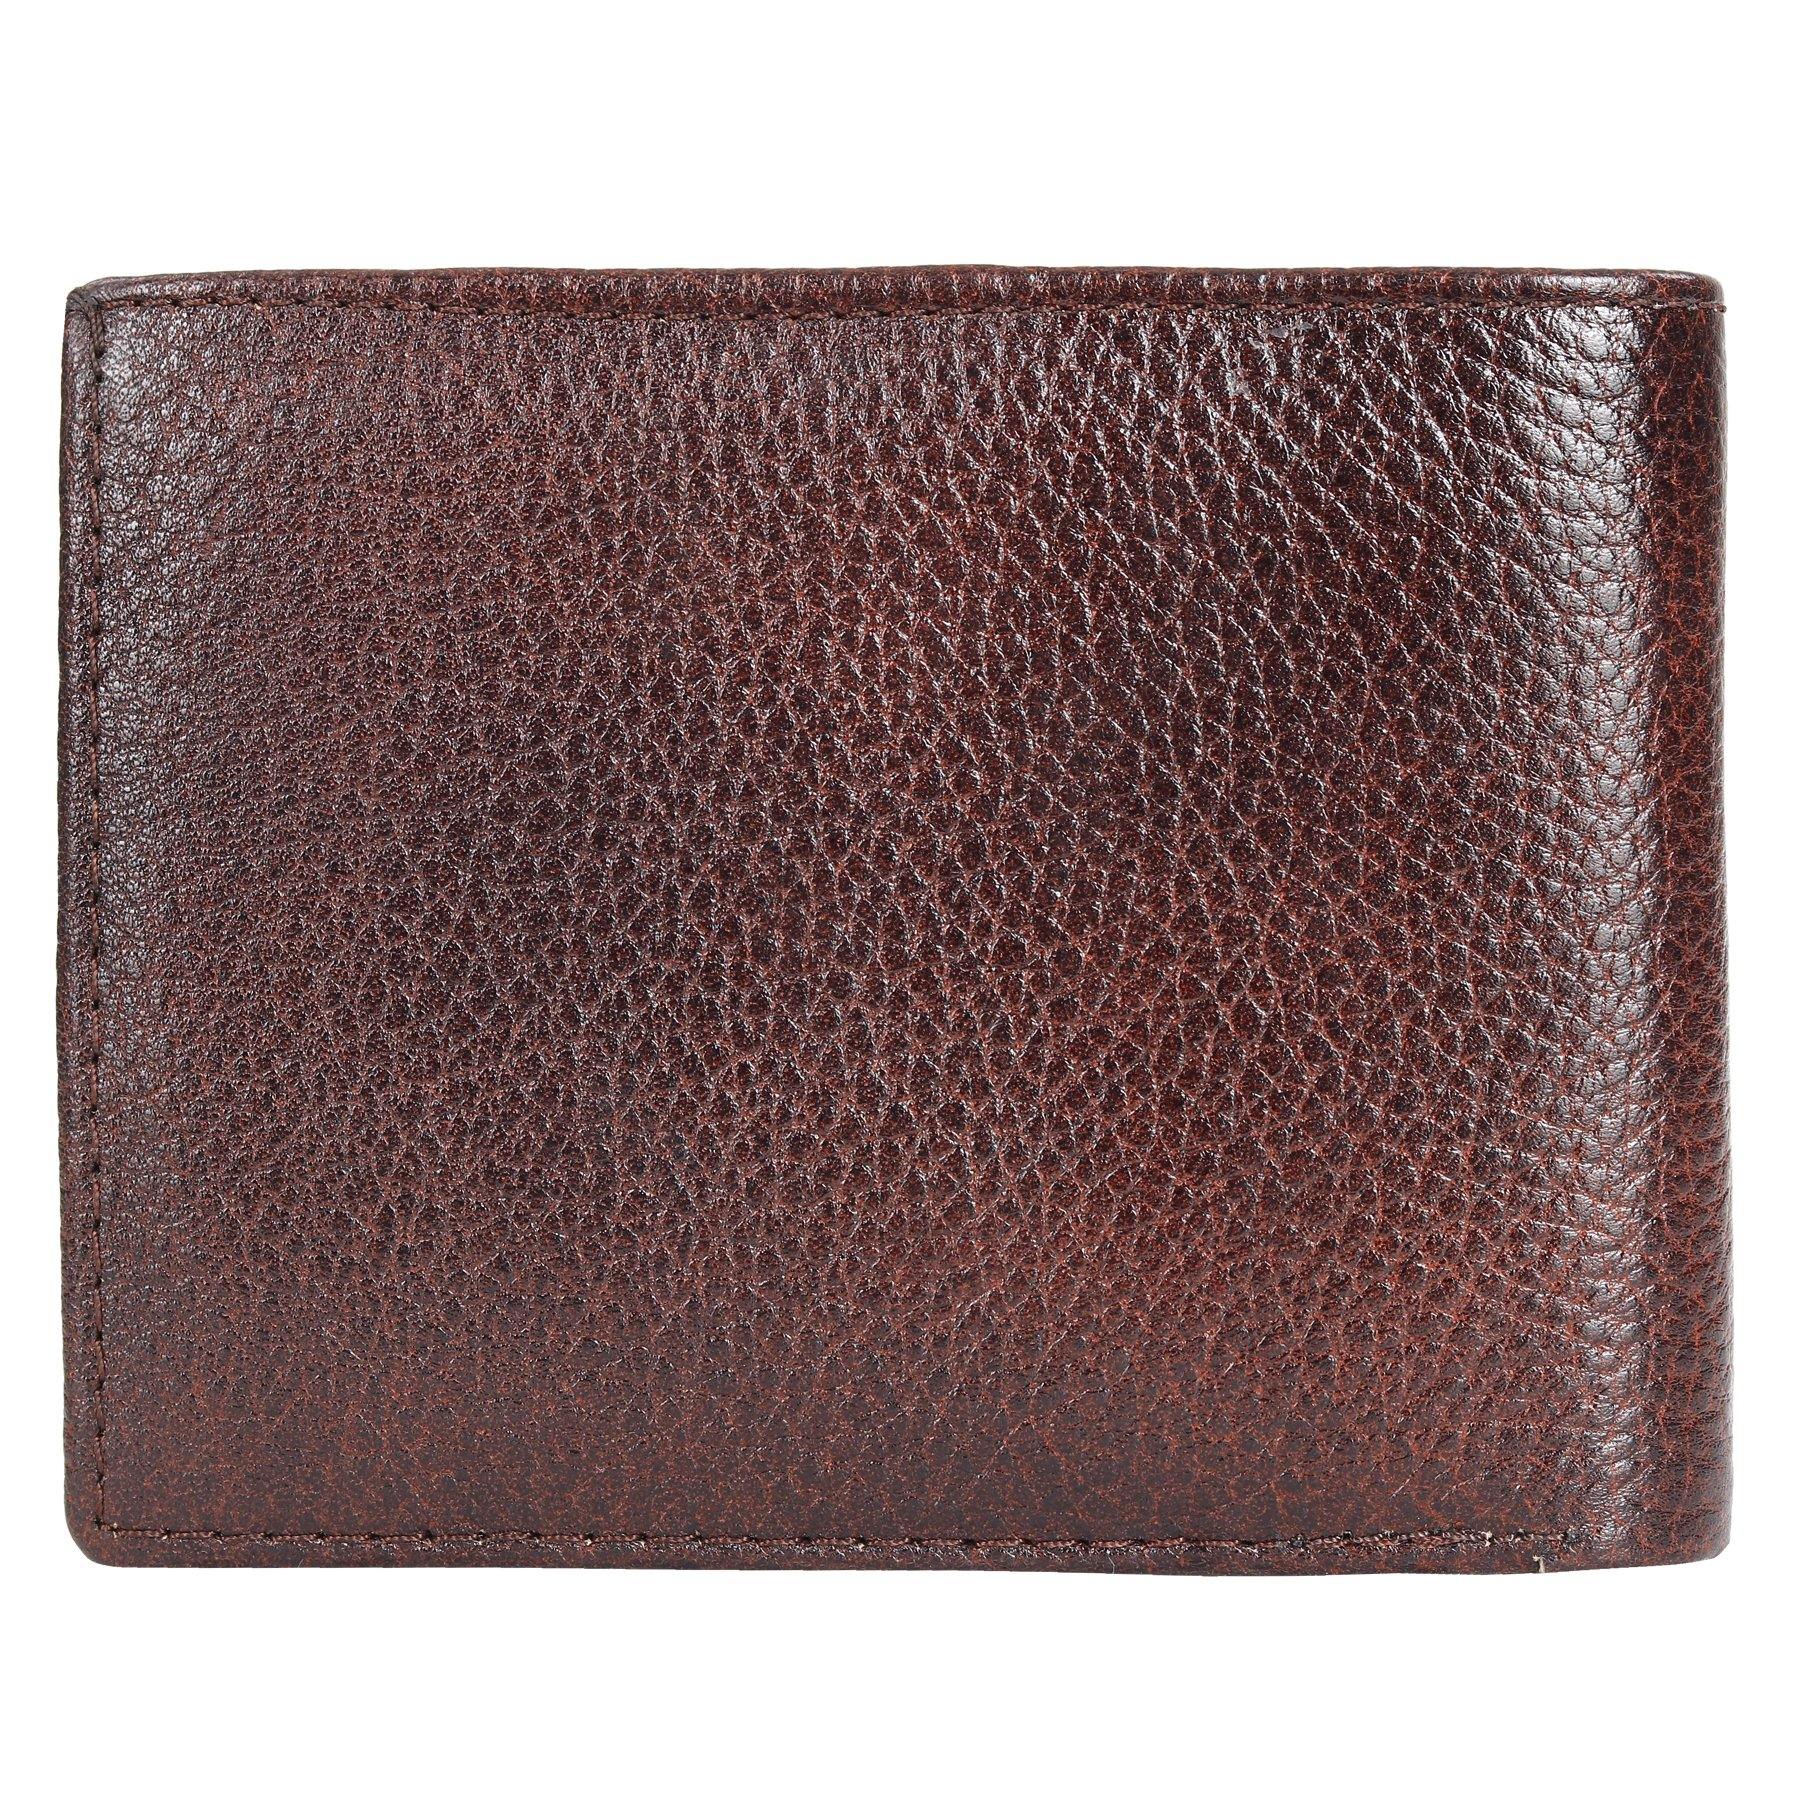 Opulent Leather Wallet - Leatherworldonline.net